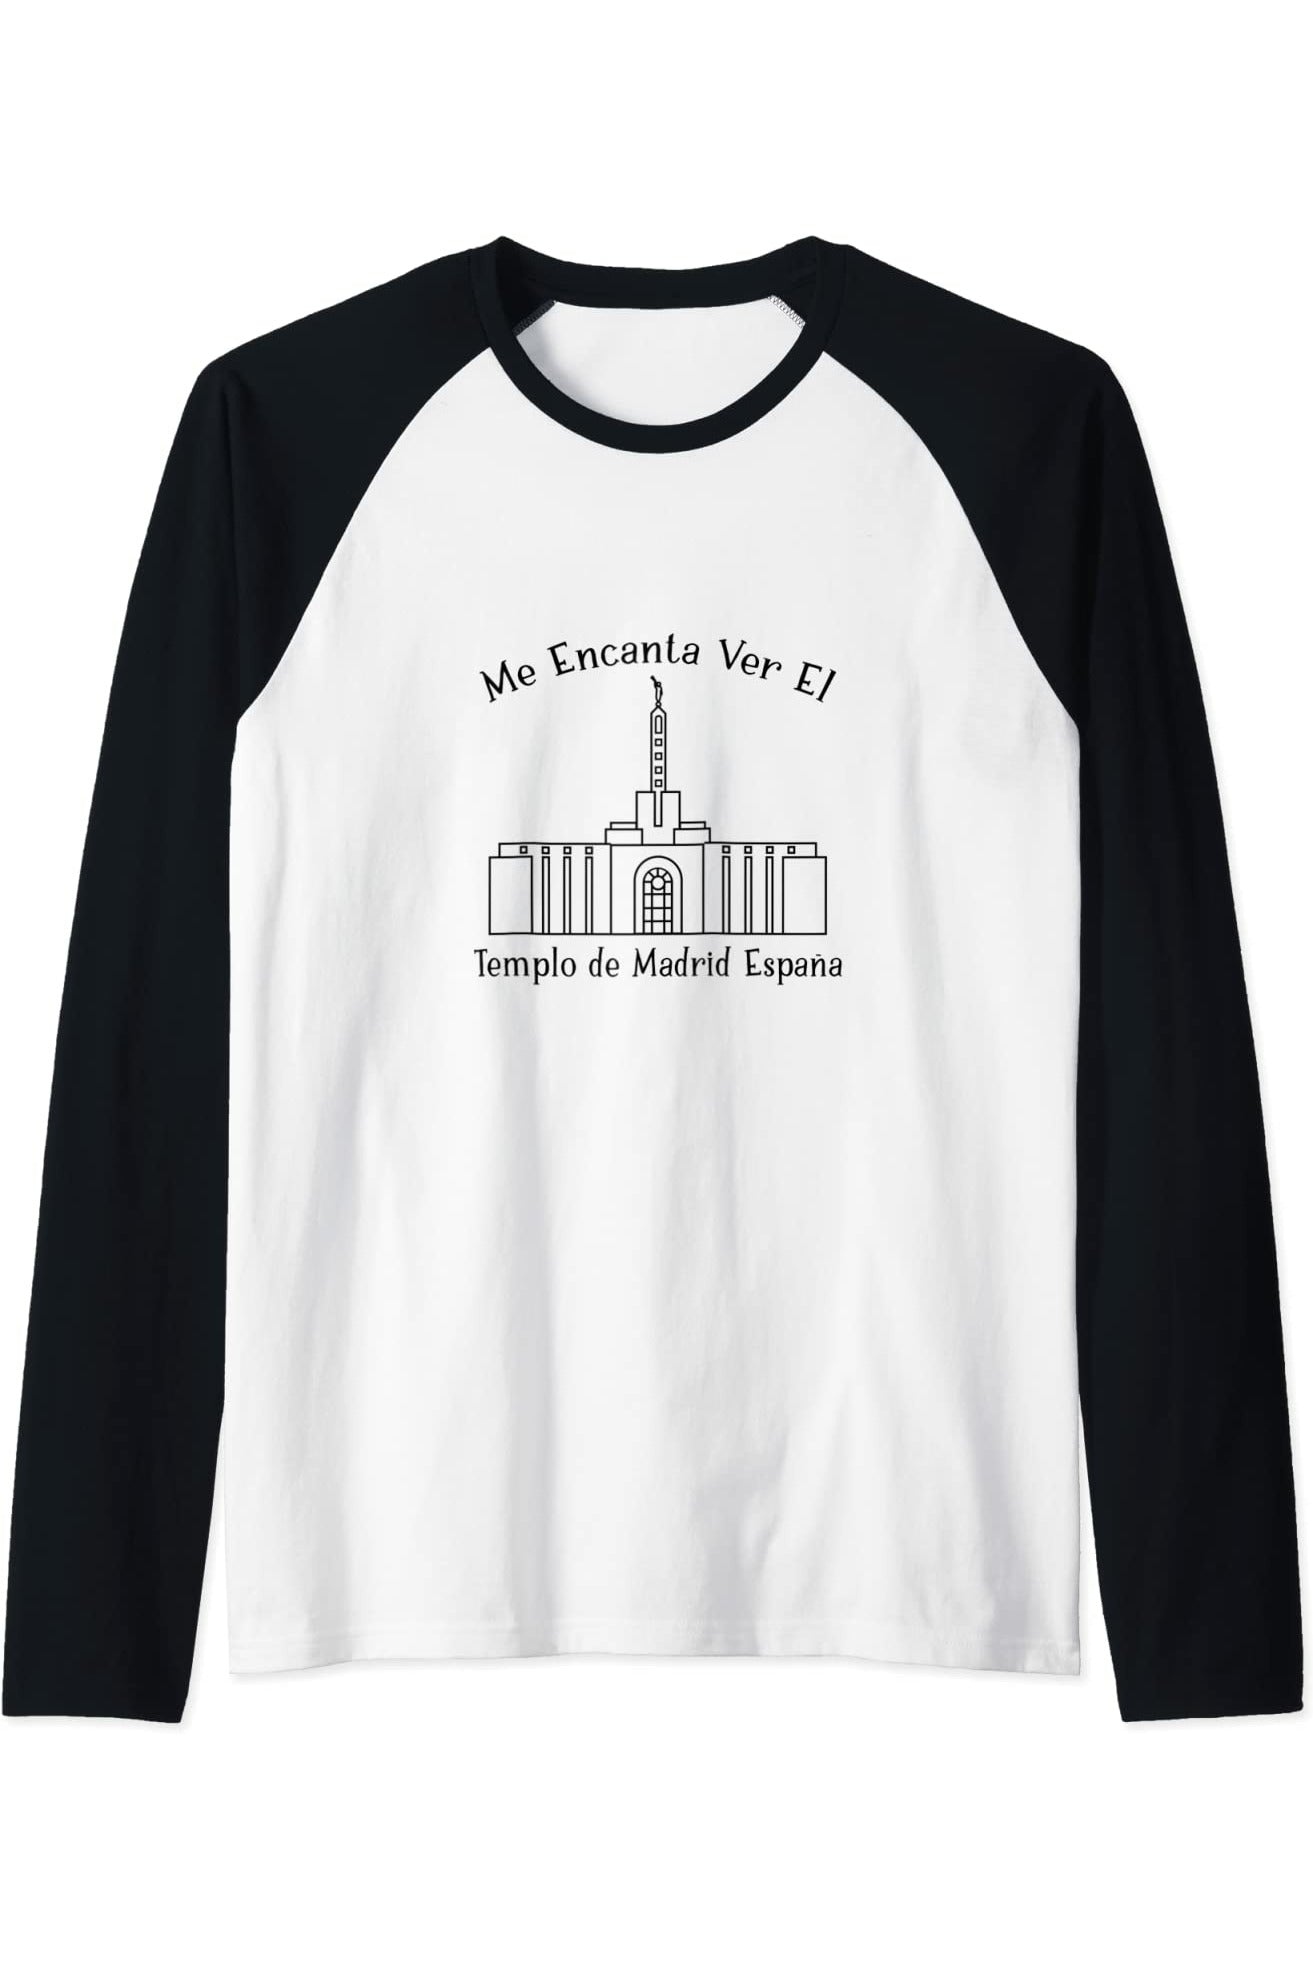 Madrid Spagna Temple, amo vedere il mio tempio felice (spagnolo) Raglan T-Shirt